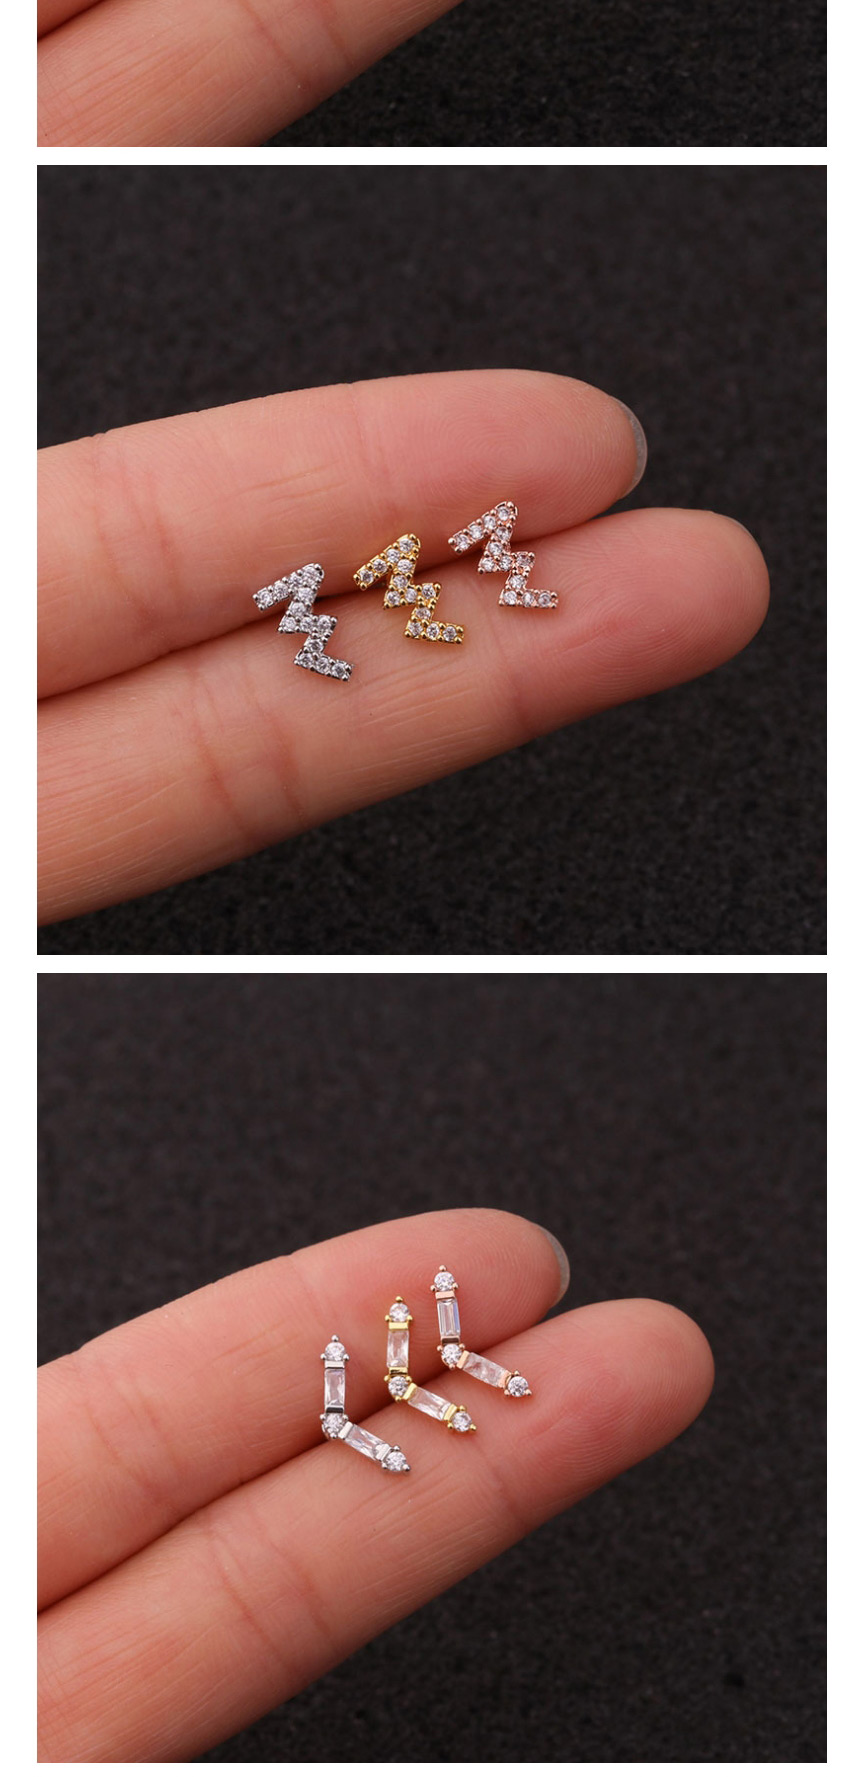 Fashion 15# Rose Gold Stainless Steel Piercing Jewelry Zircon Earrings Female Flower Ear Bone Nails (1pcs),Ear Cartilage Rings & Studs